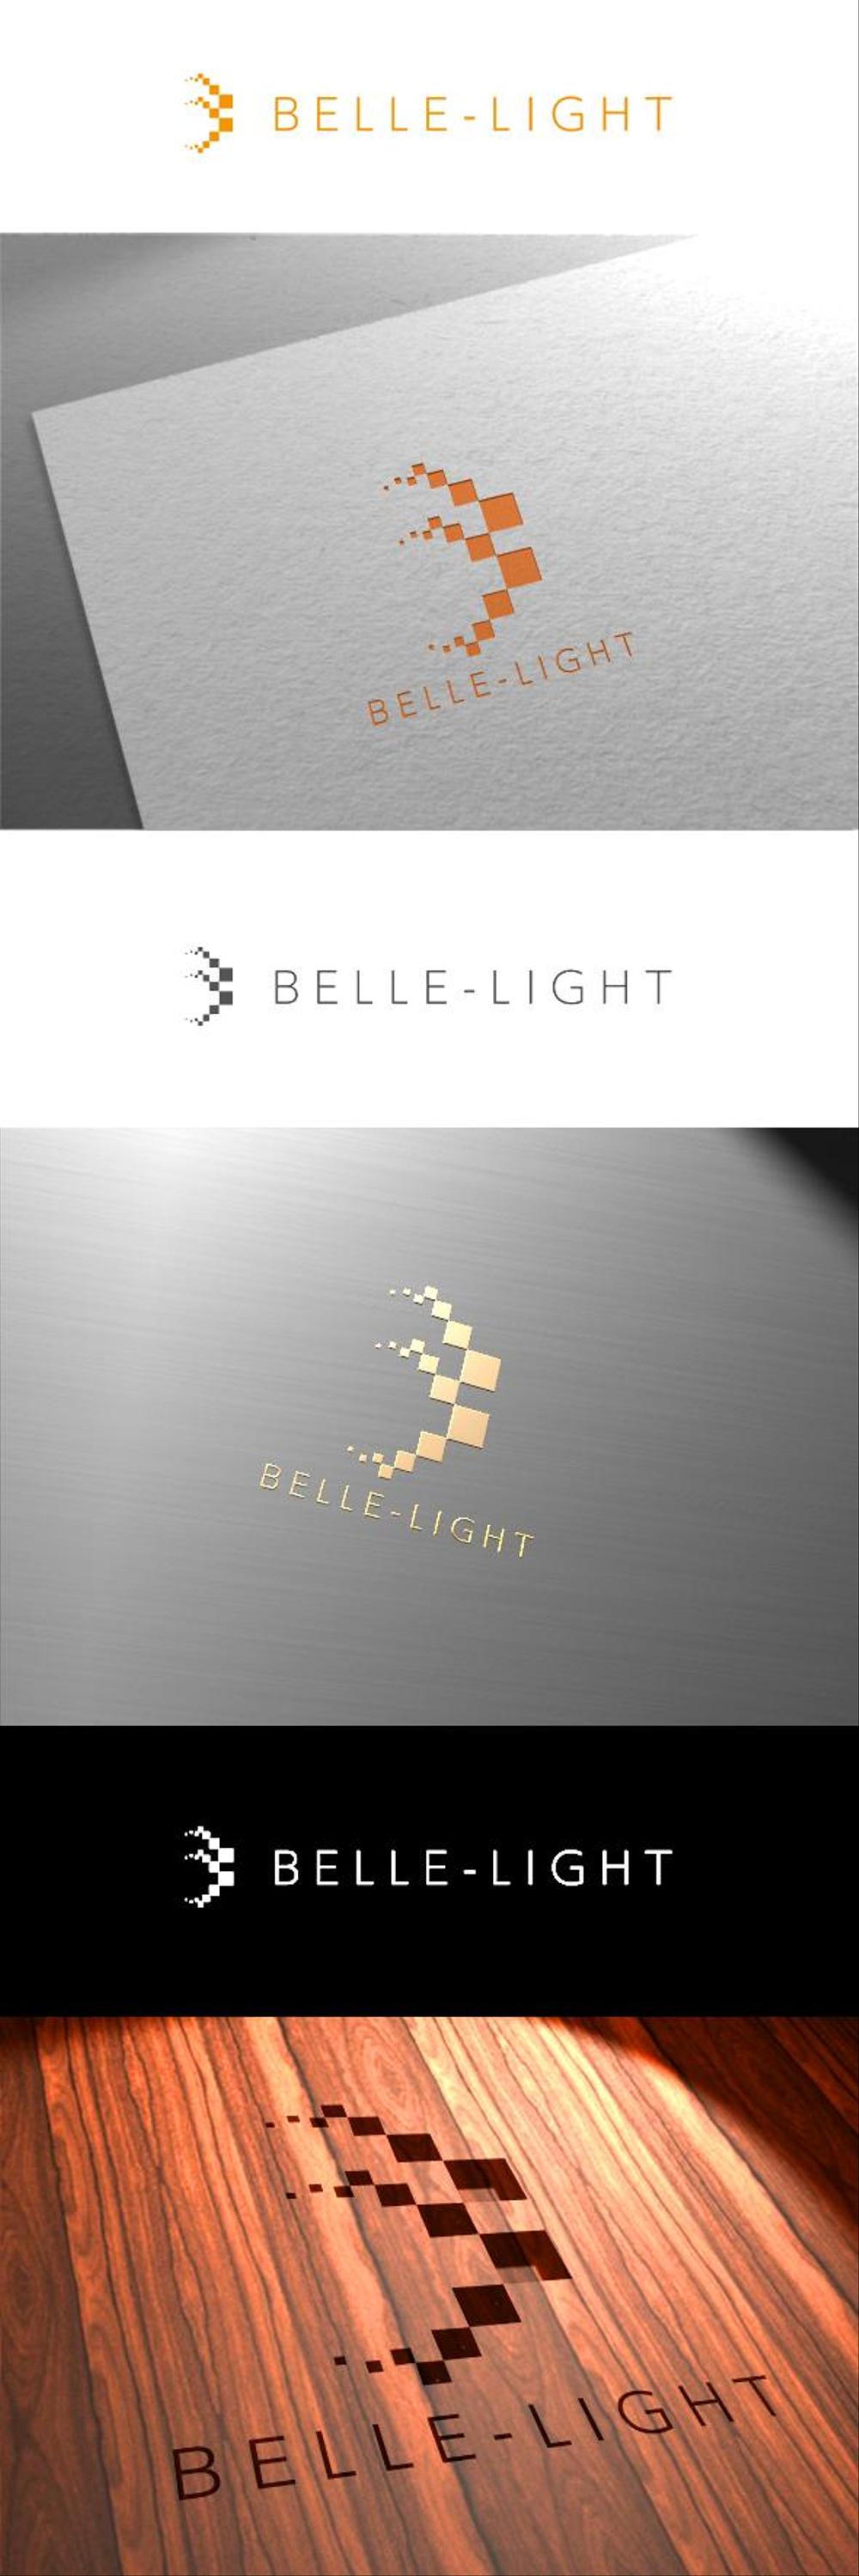 BELLE-LIGHT2.png